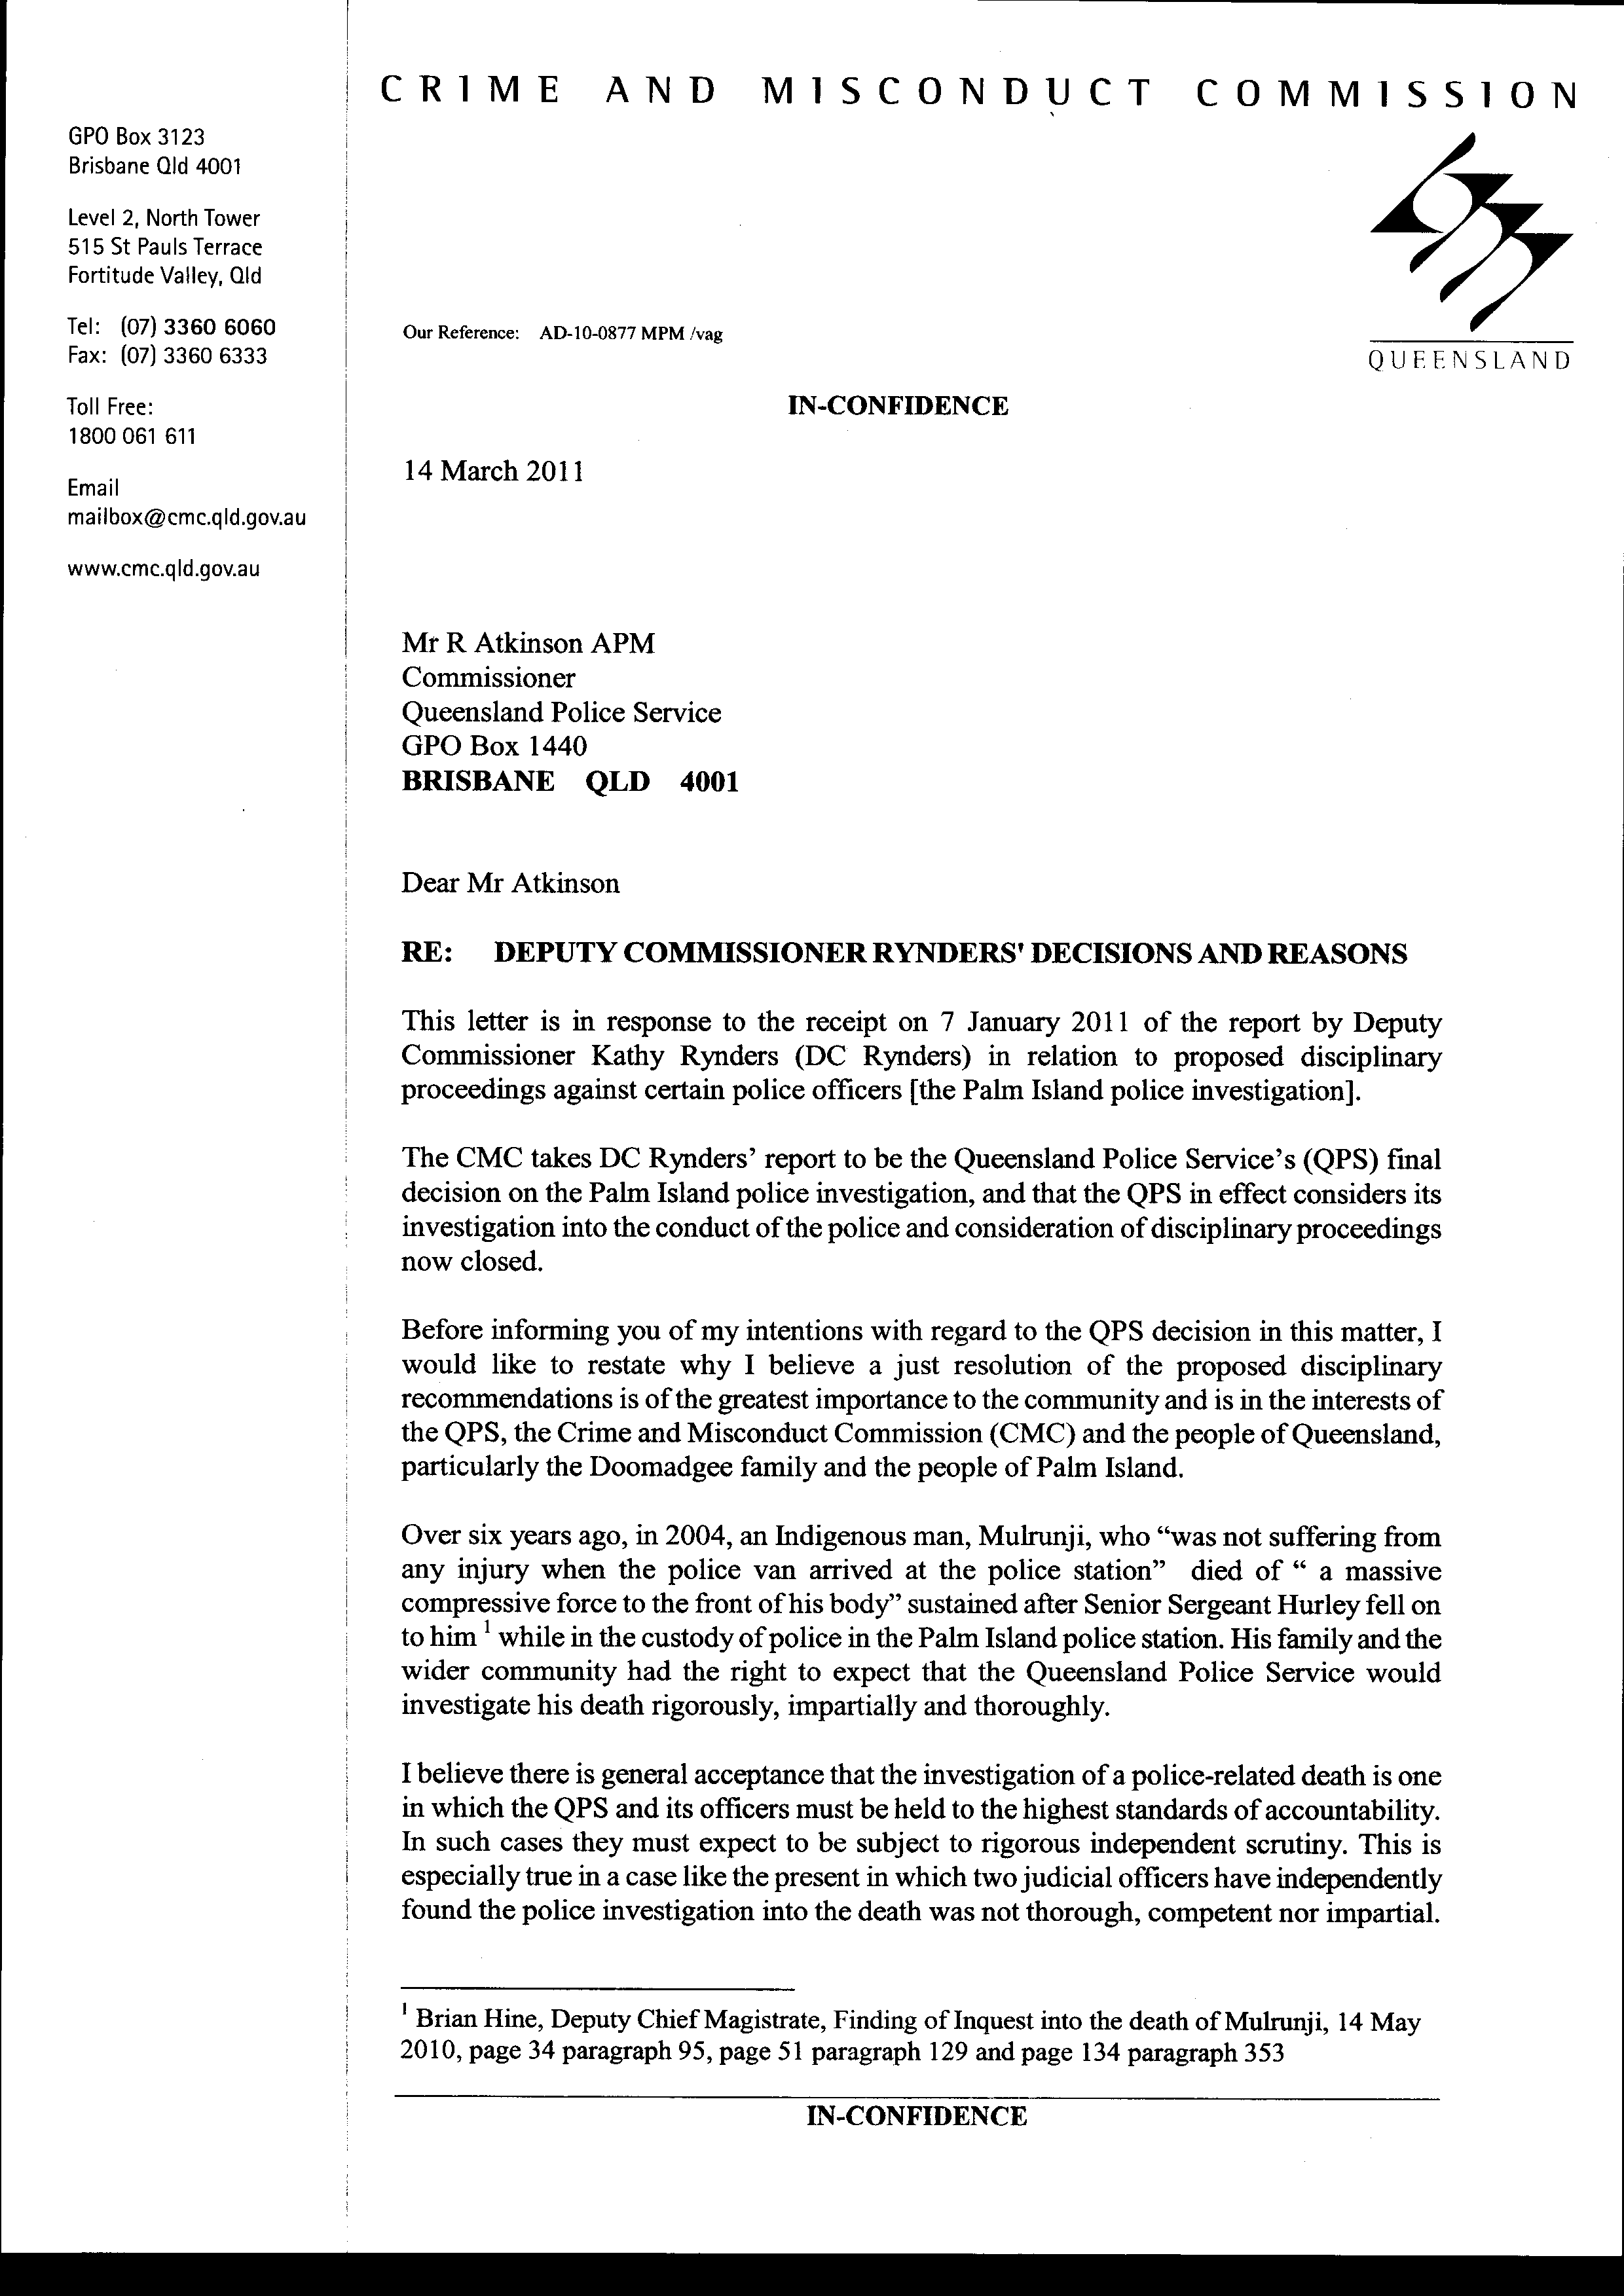 Police Commissioner Complaint Letter